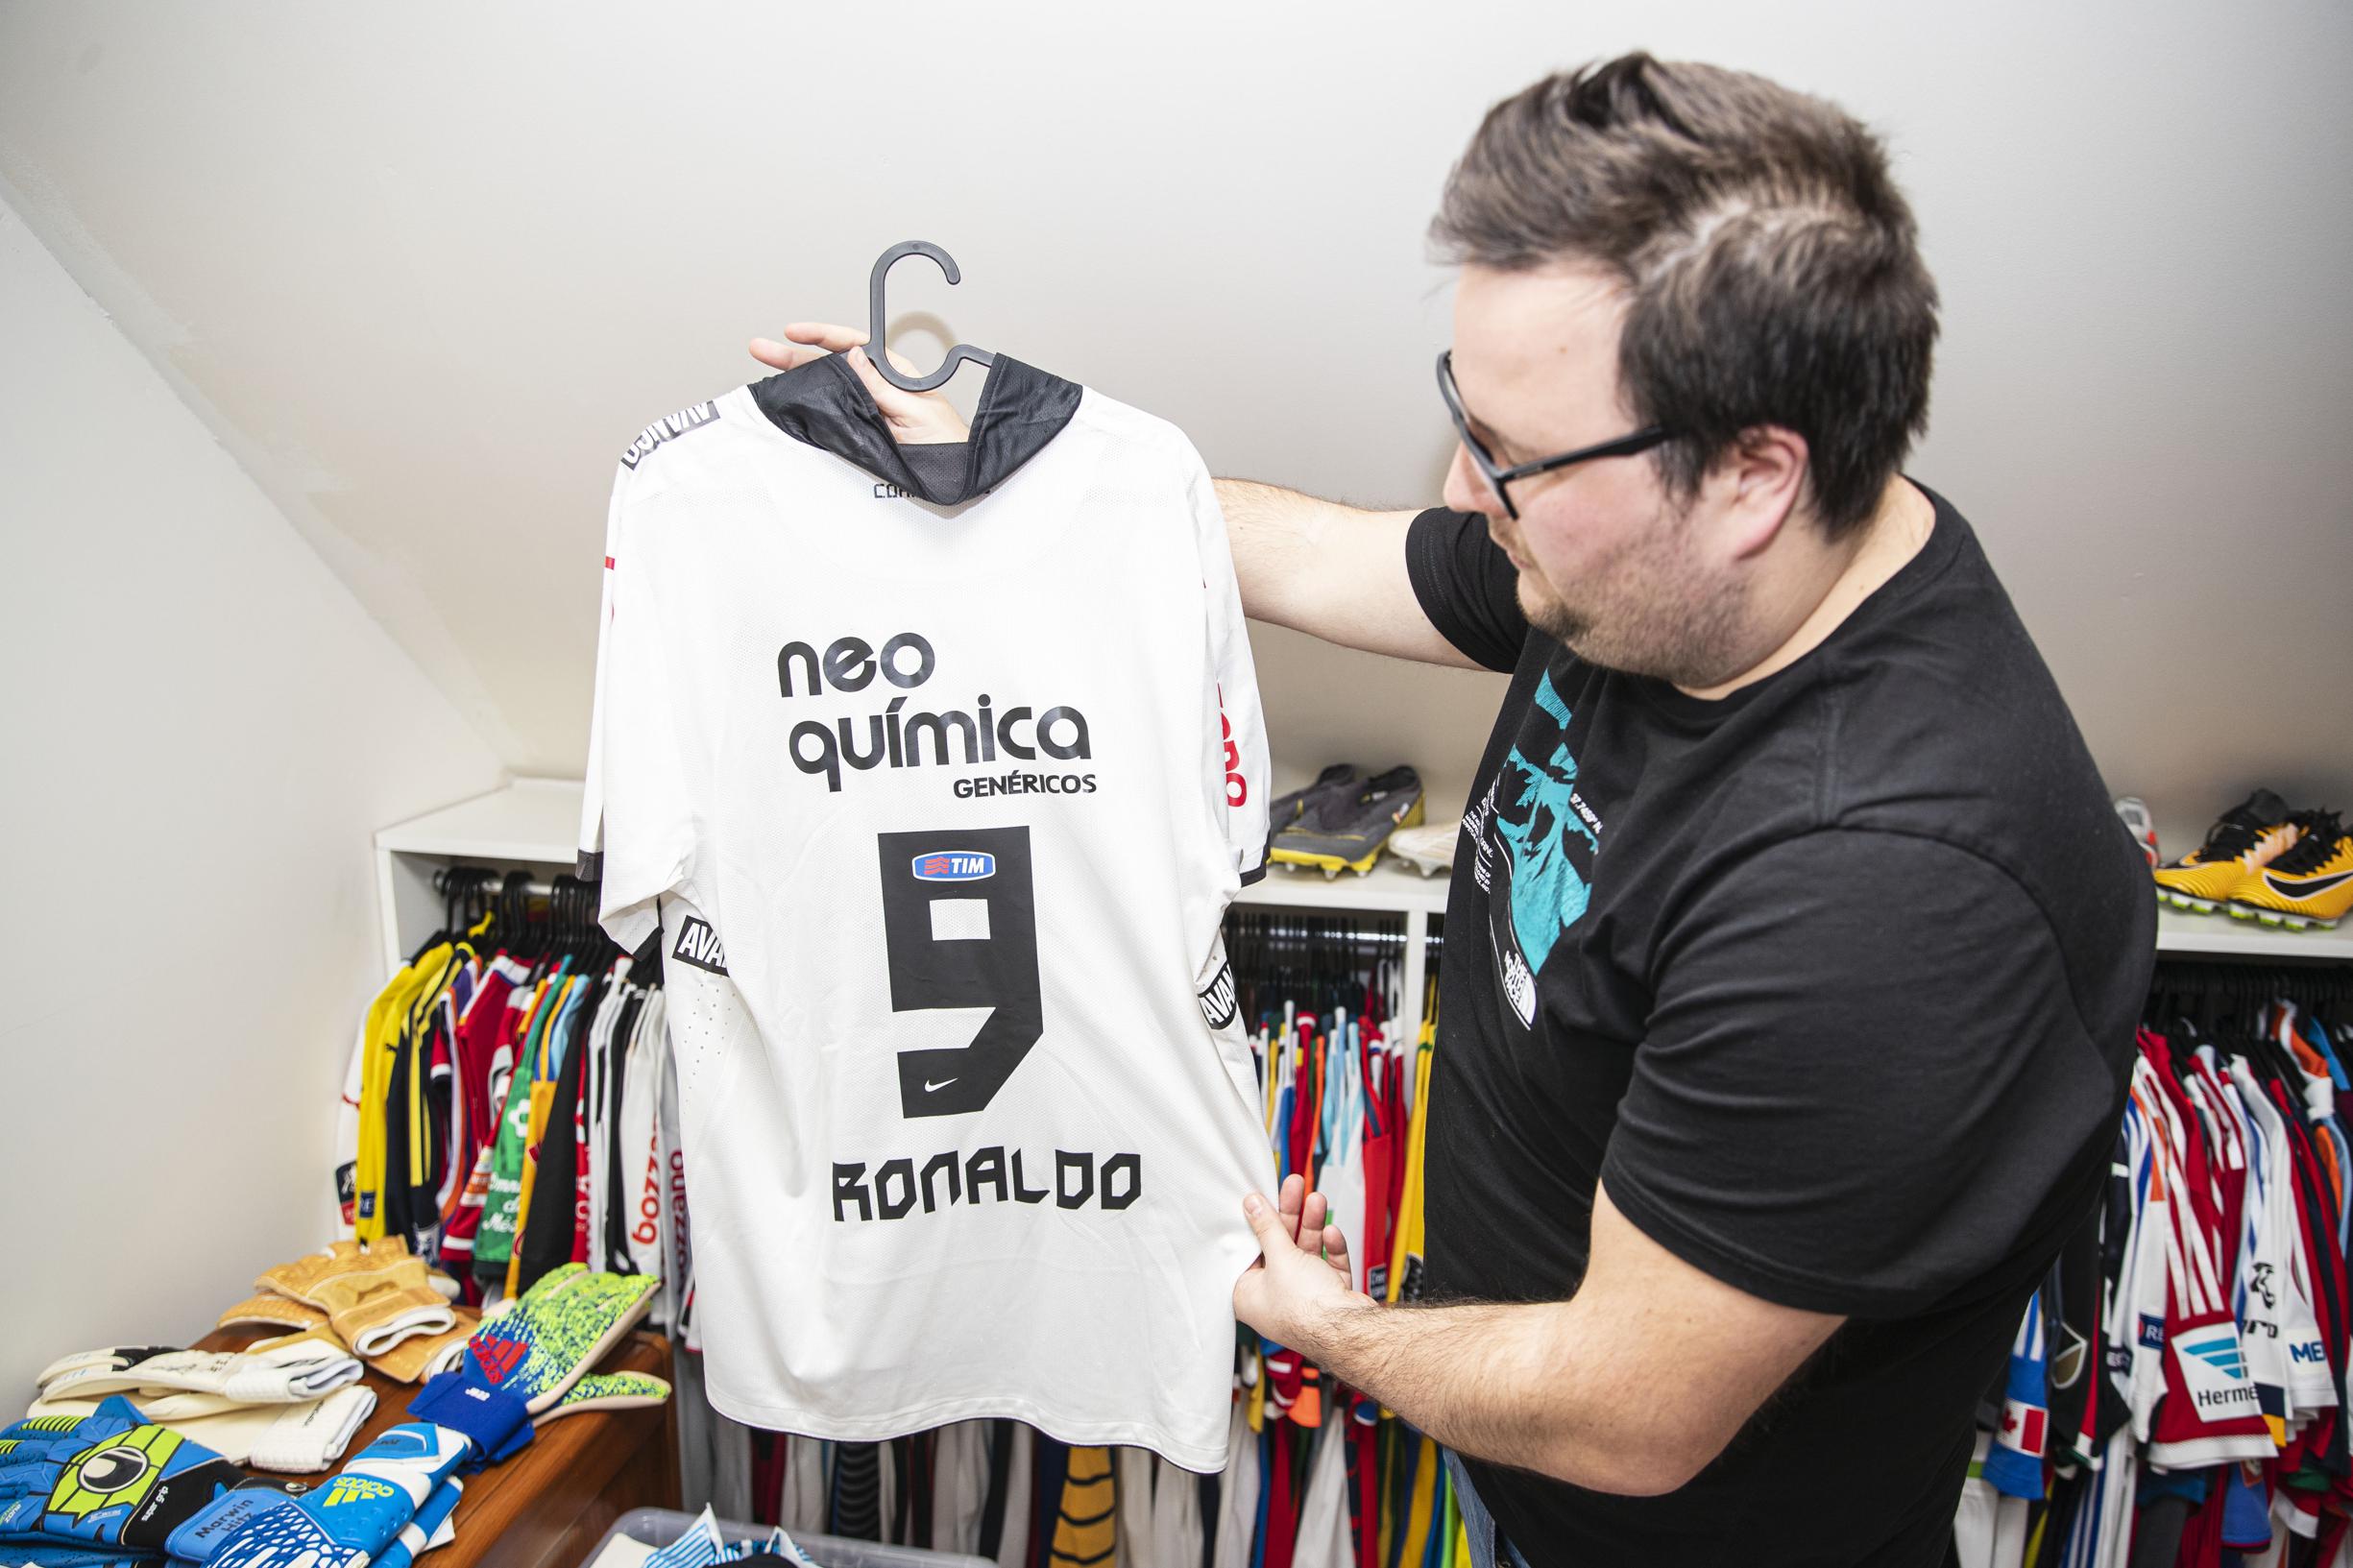 Grillig Weekendtas gat Thijs uit Lommel verzamelt oude voetbalshirts om inflatie tegen te gaan:  “Stijgt alleen maar in waarde” (Lommel) | Het Belang van Limburg Mobile